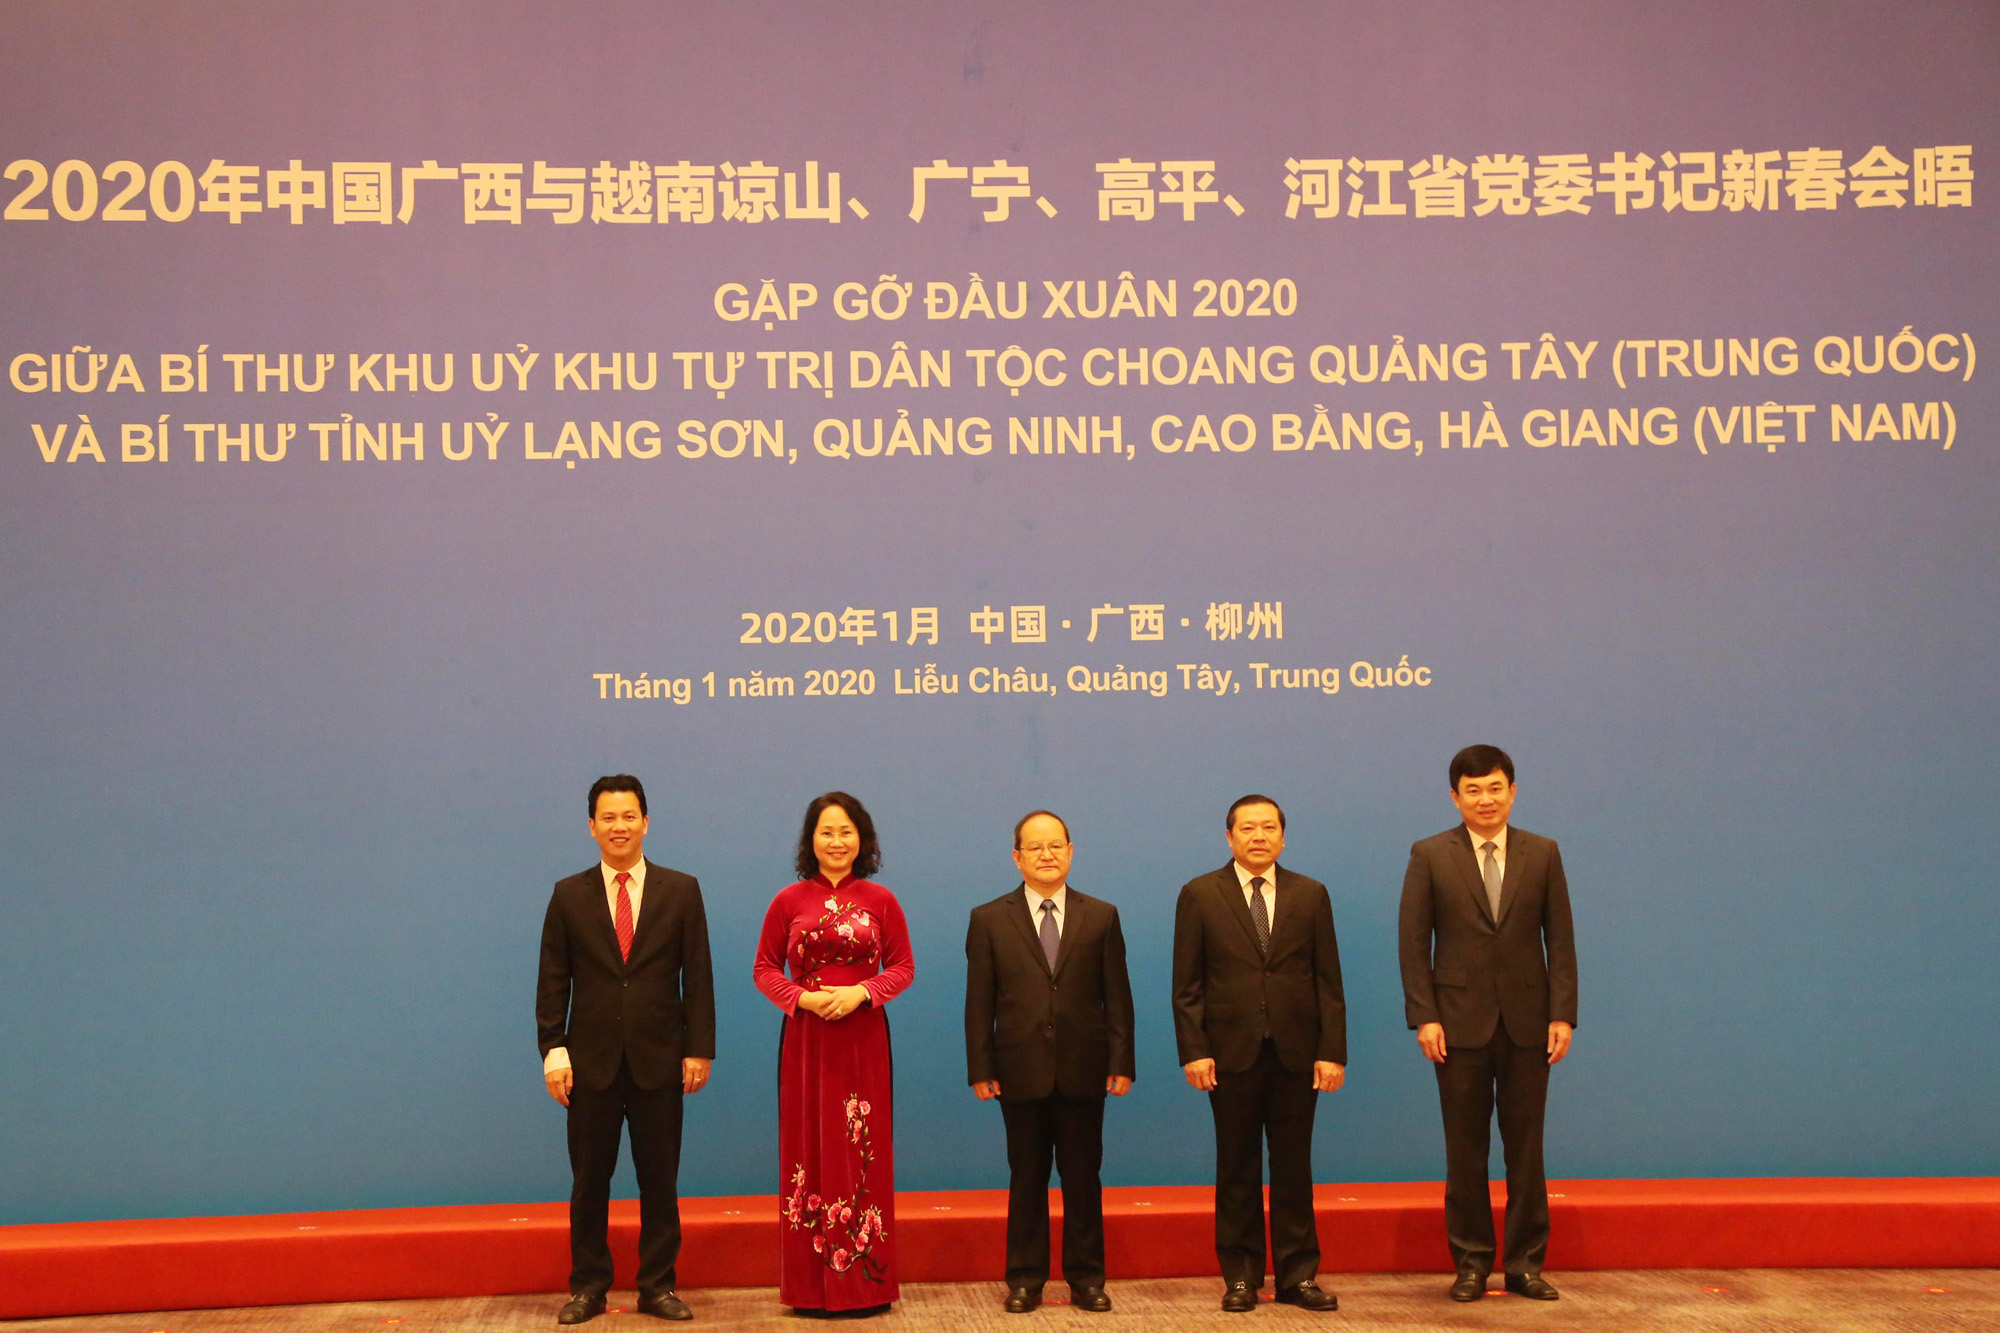 đồng chí Phó Bí thư Thường trực Tỉnh ủy Quảng Ninh phát biểu tại Hội đàm gặp gỡ đầu Xuân 2020 tại TP Liễu Châu, Quảng Tây, Trung Quốc 